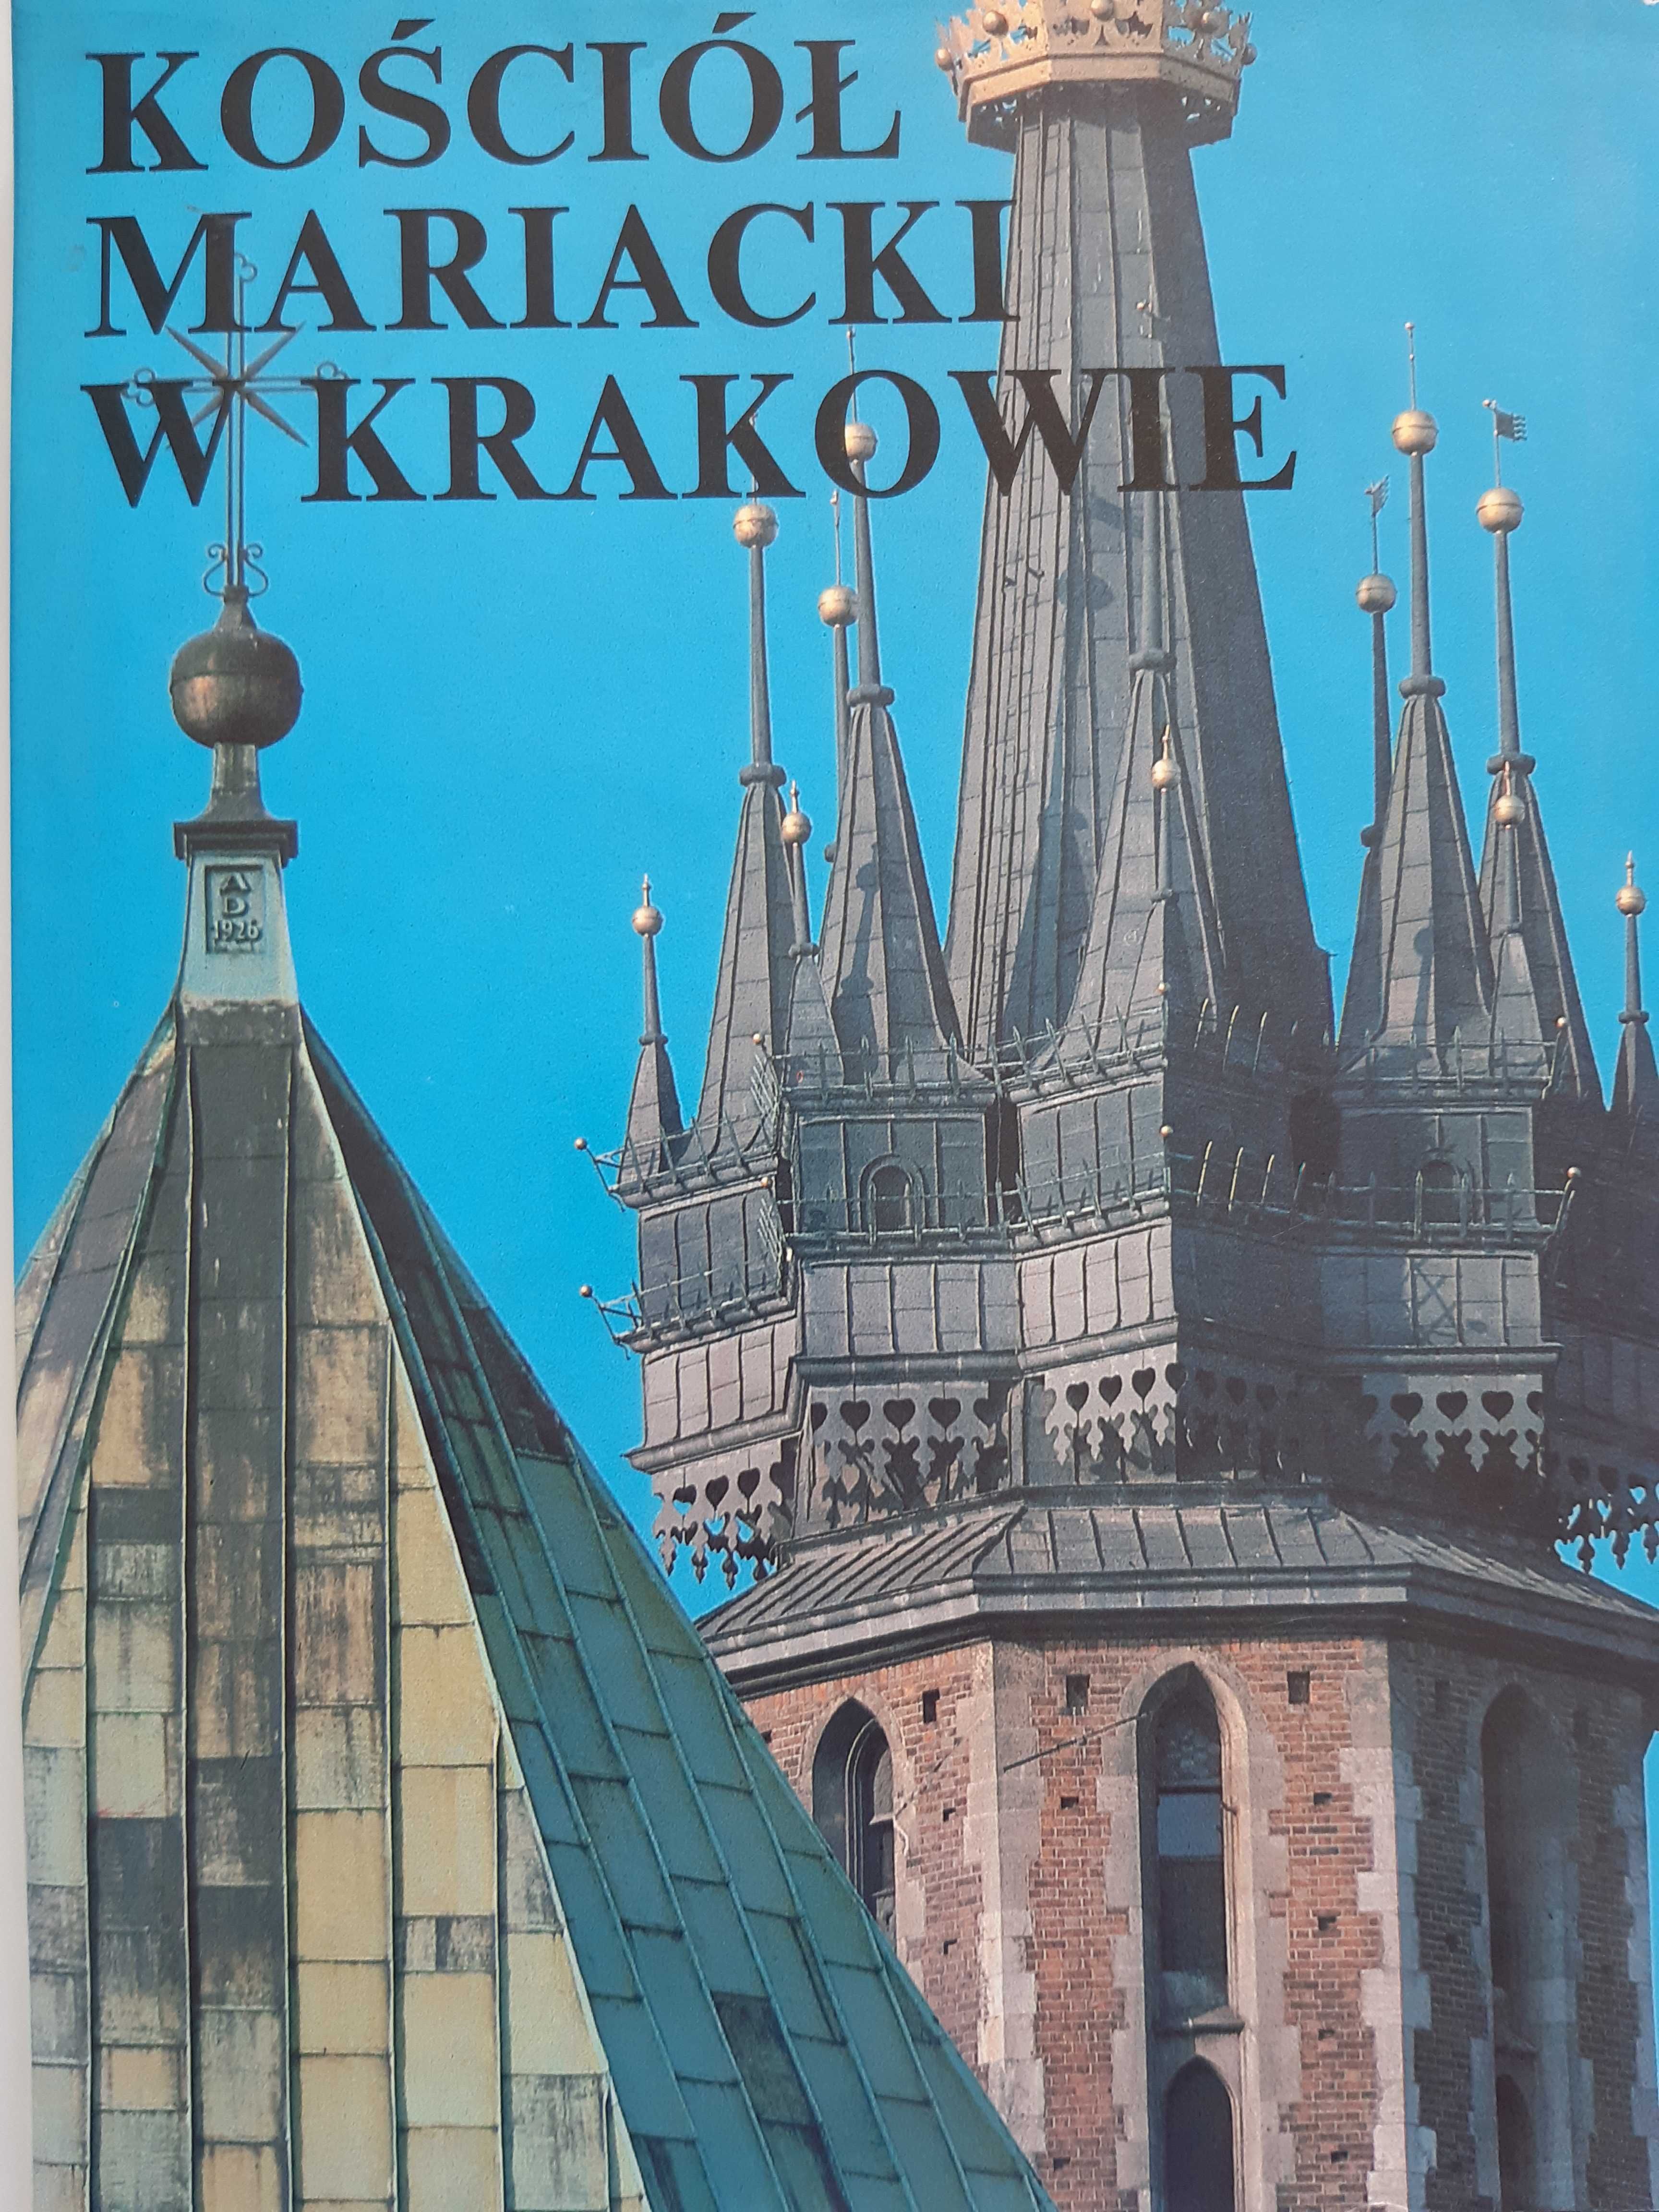 Kościół Mariacki w Krakowie. Stan bdb. Wysyłka. Jan Samek. Album.